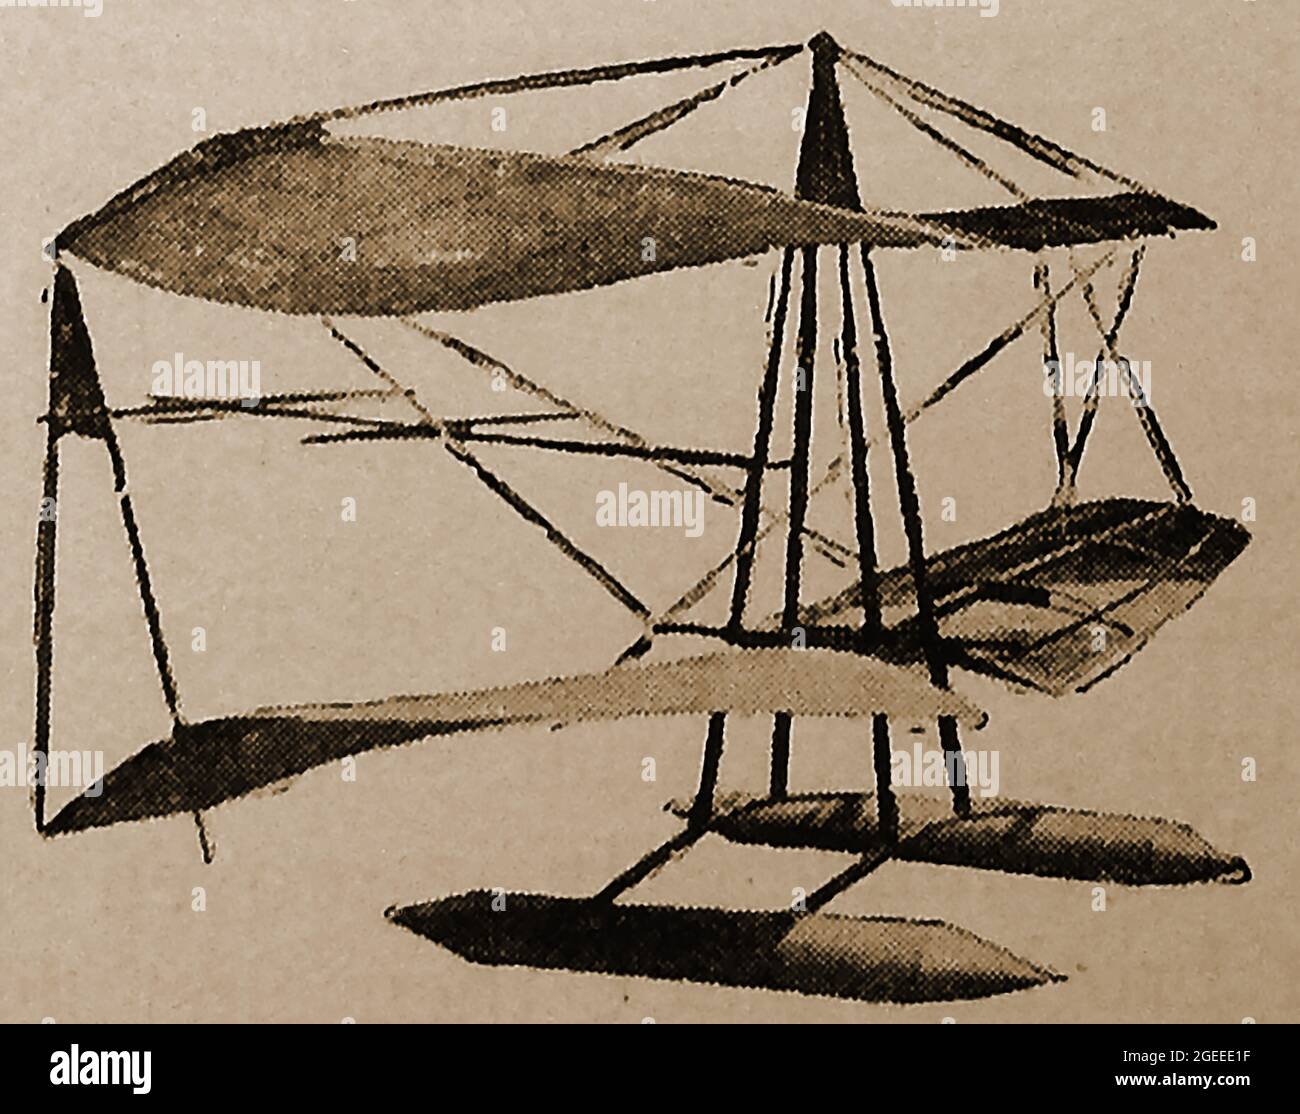 Eine frühe Illustration von Pionierflugzeugen - frühen Flugzeugen - einem amerikanischen Segelflugzeug, das von Gallaudet im Jahr 1898 produziert wurde. Edson Fessenden Gallaudet ( 1871 – 1945 ) war ein Pionier der Luftfahrt, bekannt für seine Entwicklung von Tragflächen und Flugzeugantriebssystemen, insbesondere für Wasserflugzeuge. Stockfoto